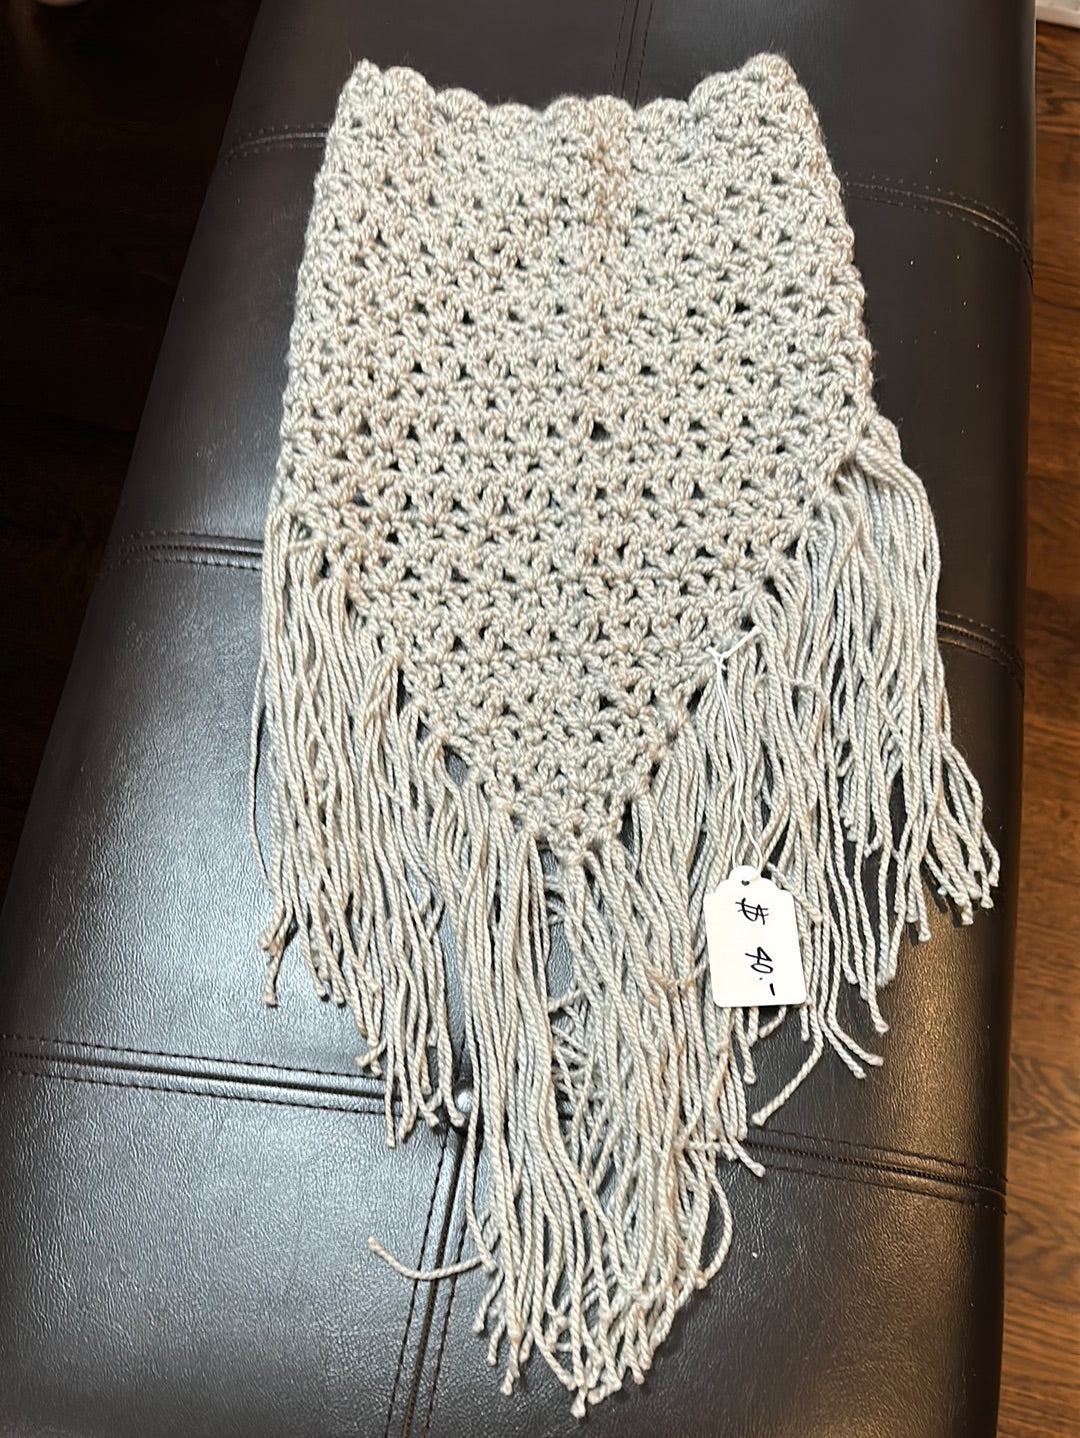 Handmade crocheted chest warmer color light gray